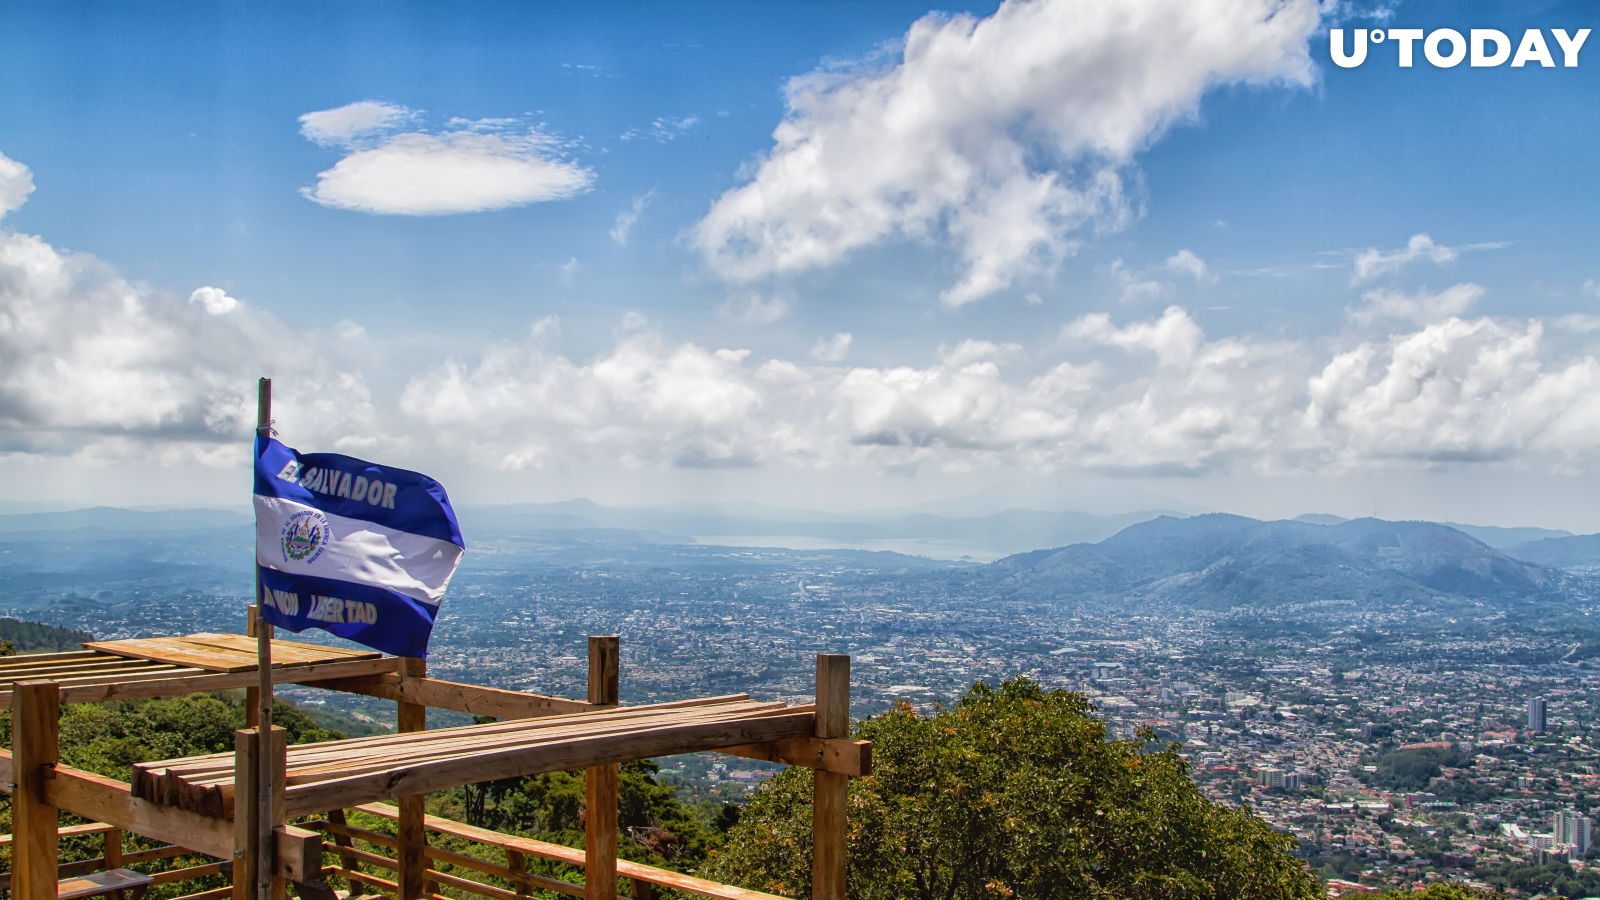 UPDATE: El Salvador Passes Groundbreaking Bitcoin Bill with Supermajority